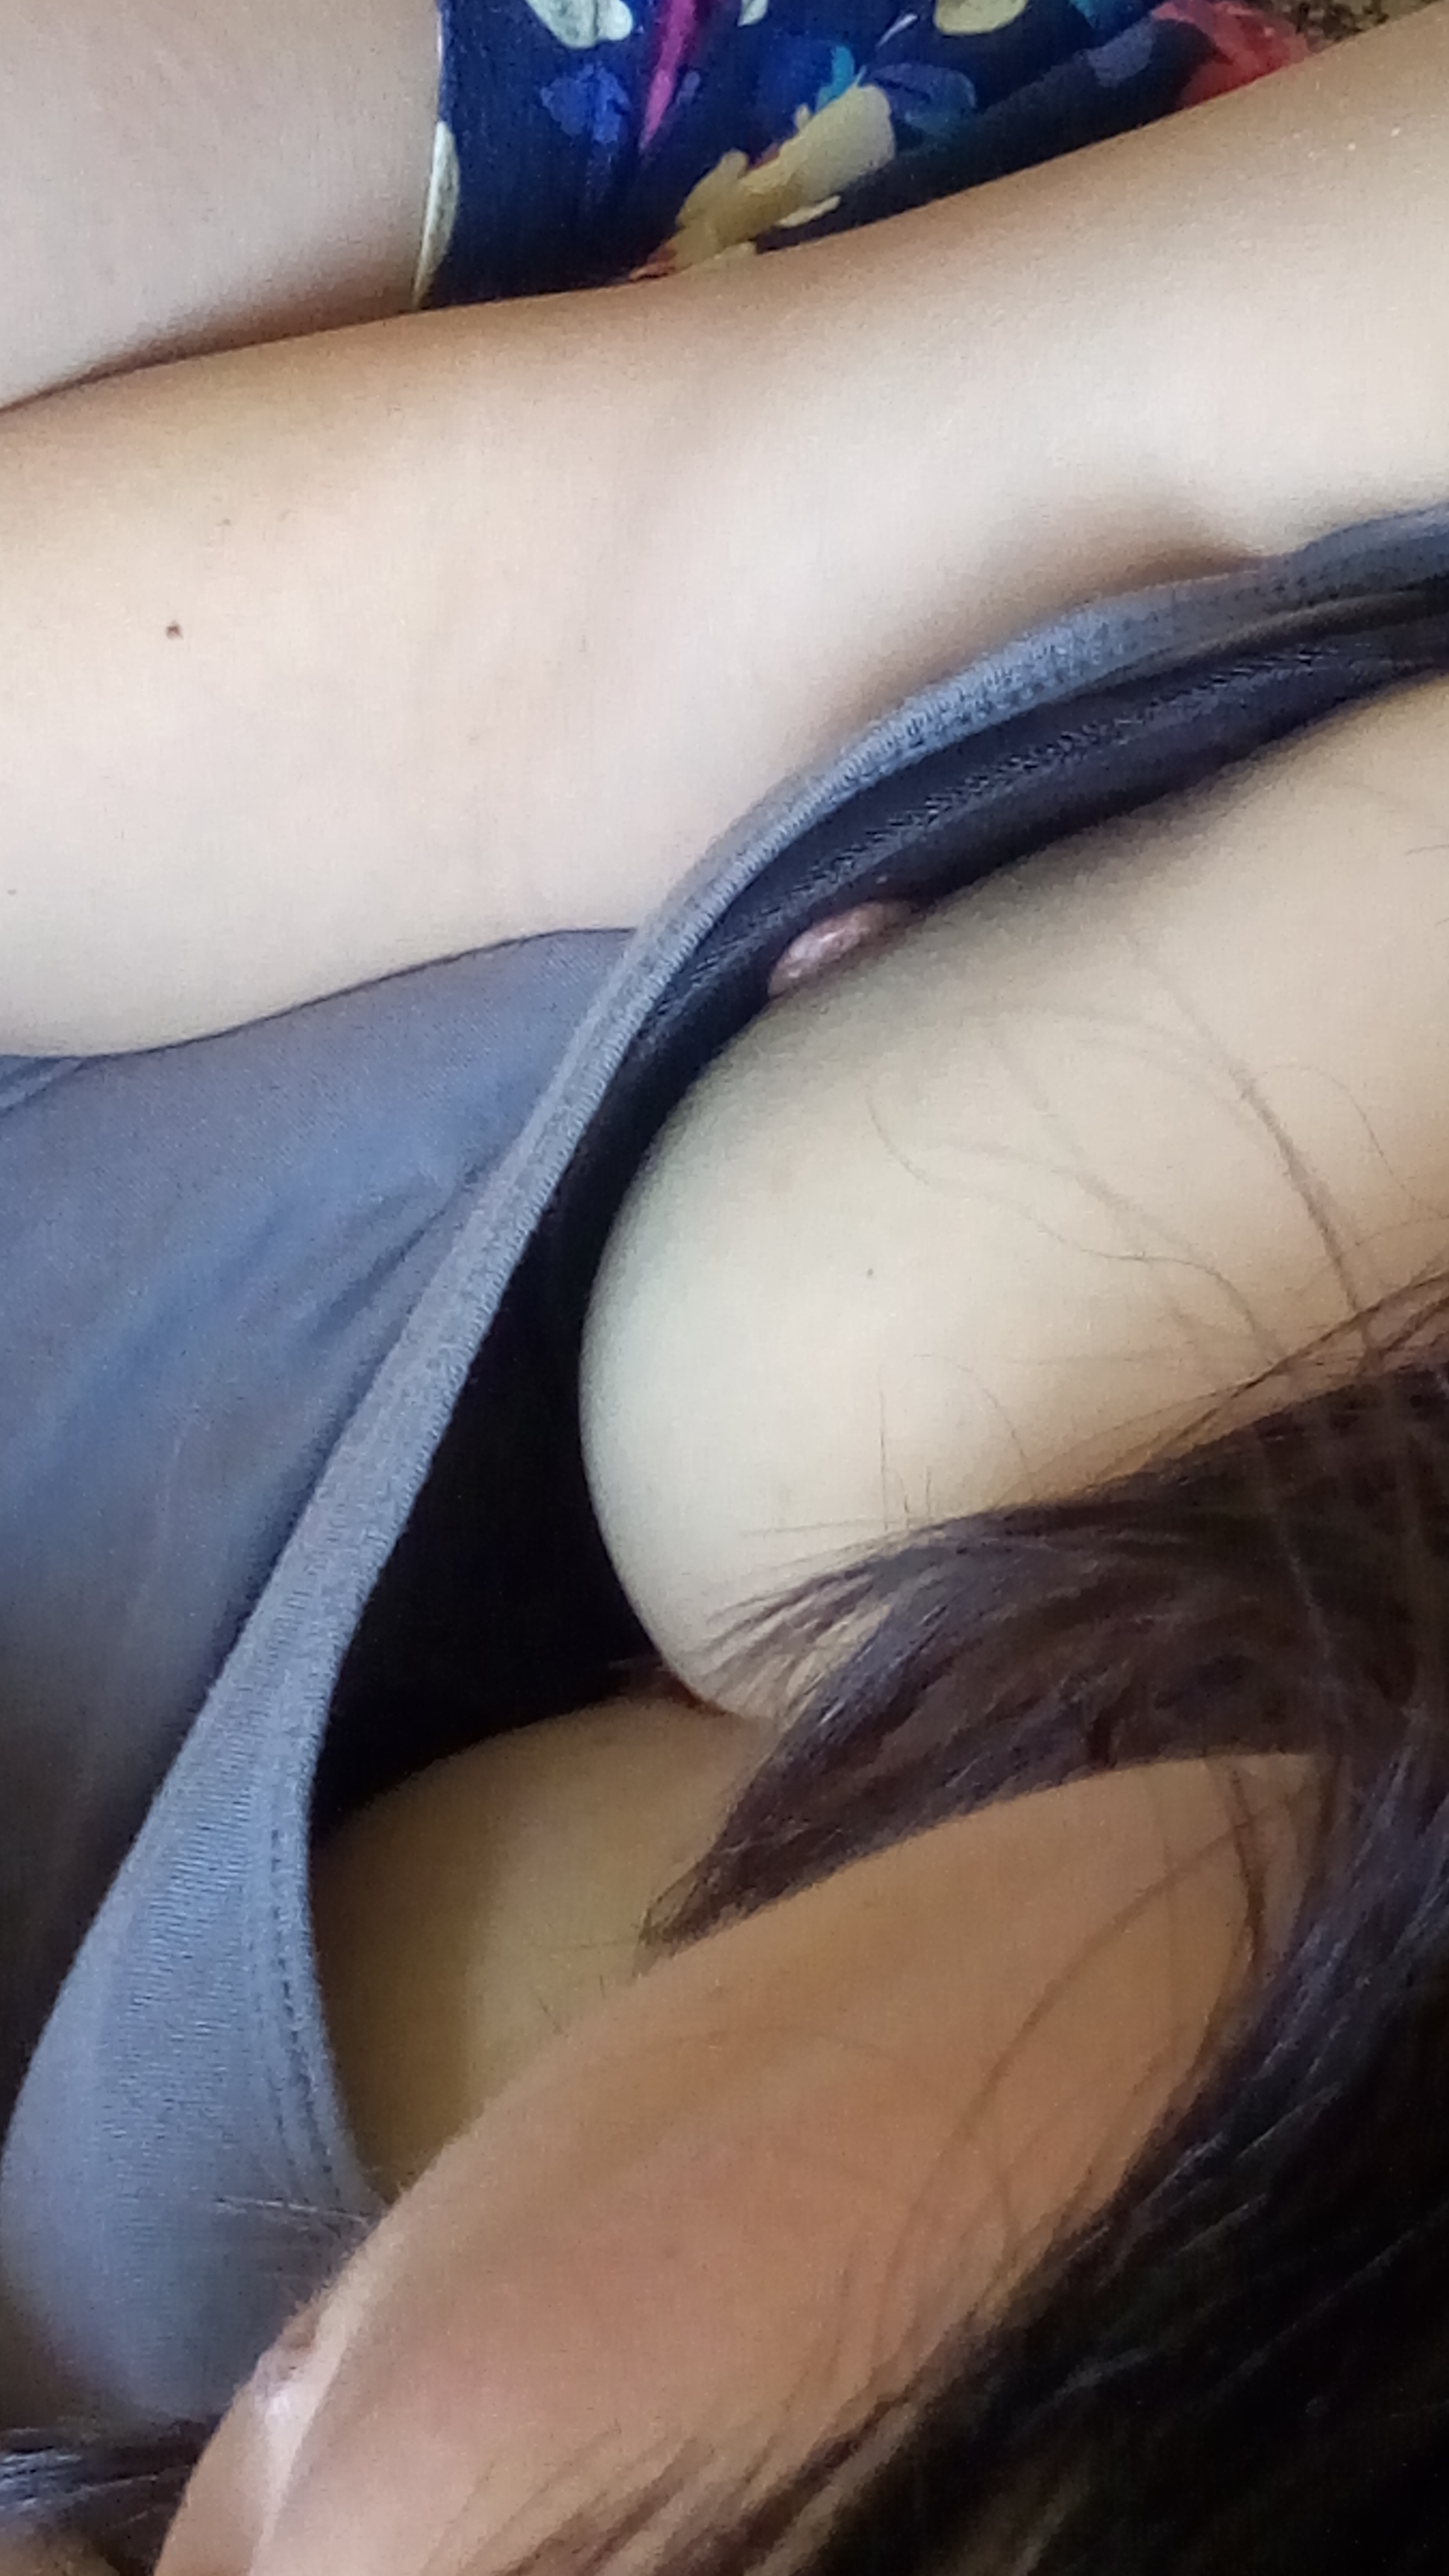 alyssa fridley share cock tease public nude photos